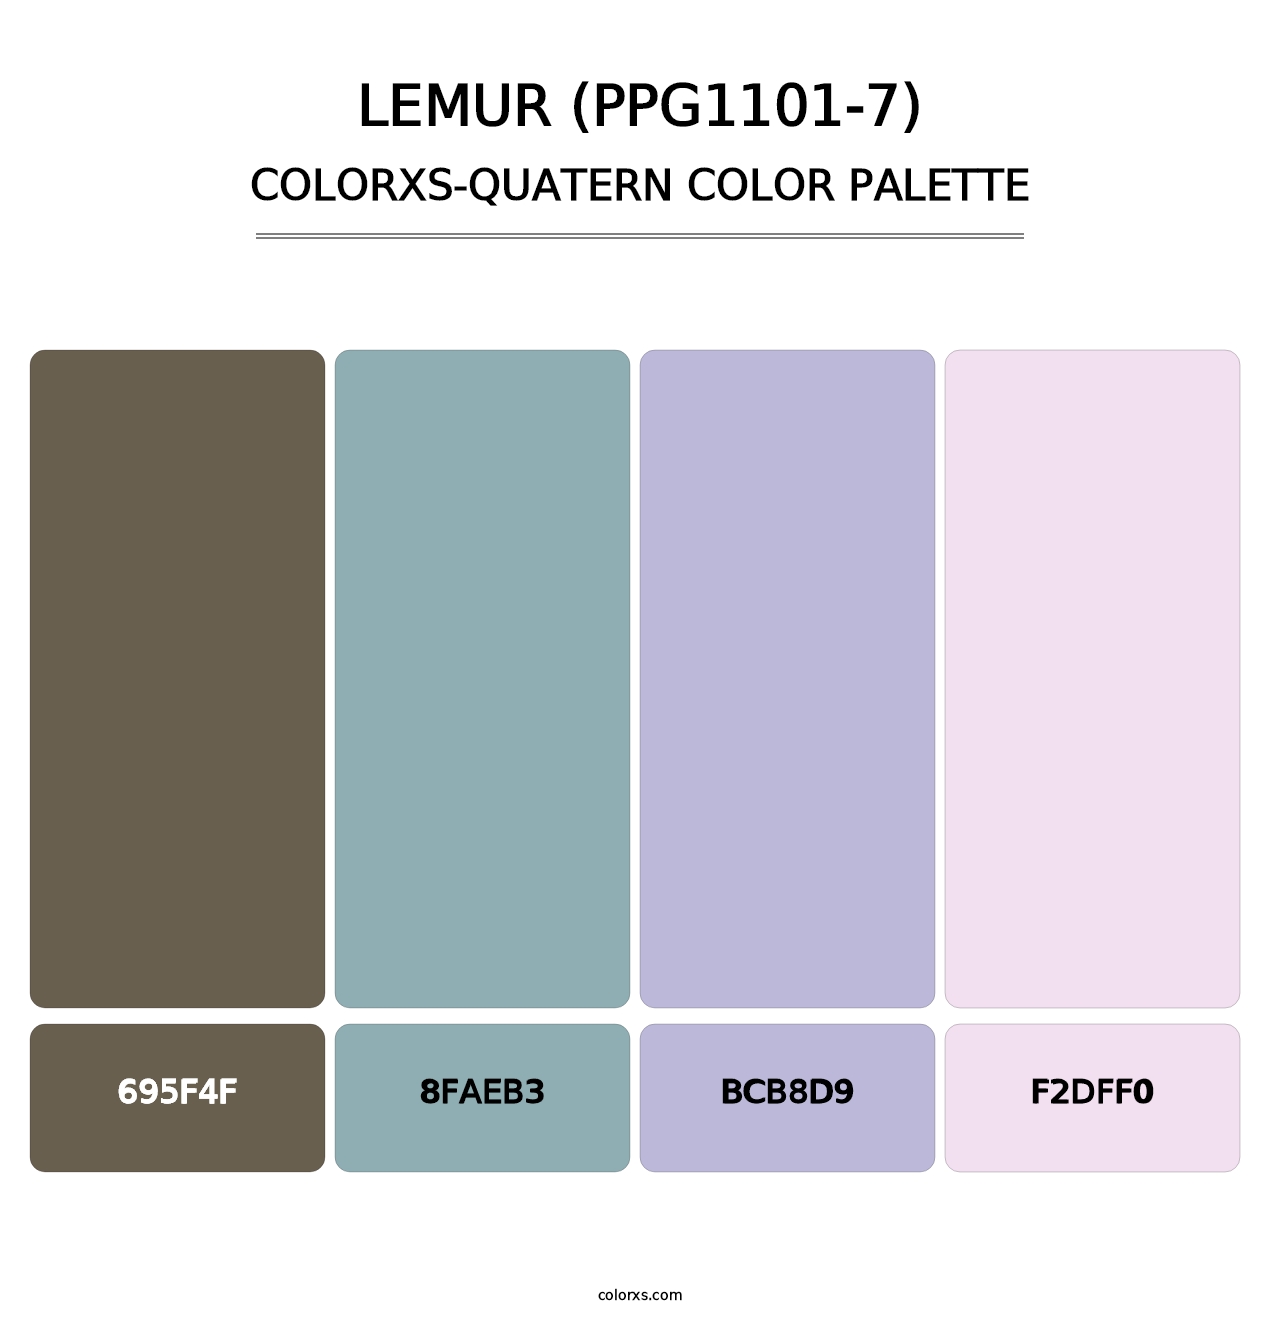 Lemur (PPG1101-7) - Colorxs Quatern Palette